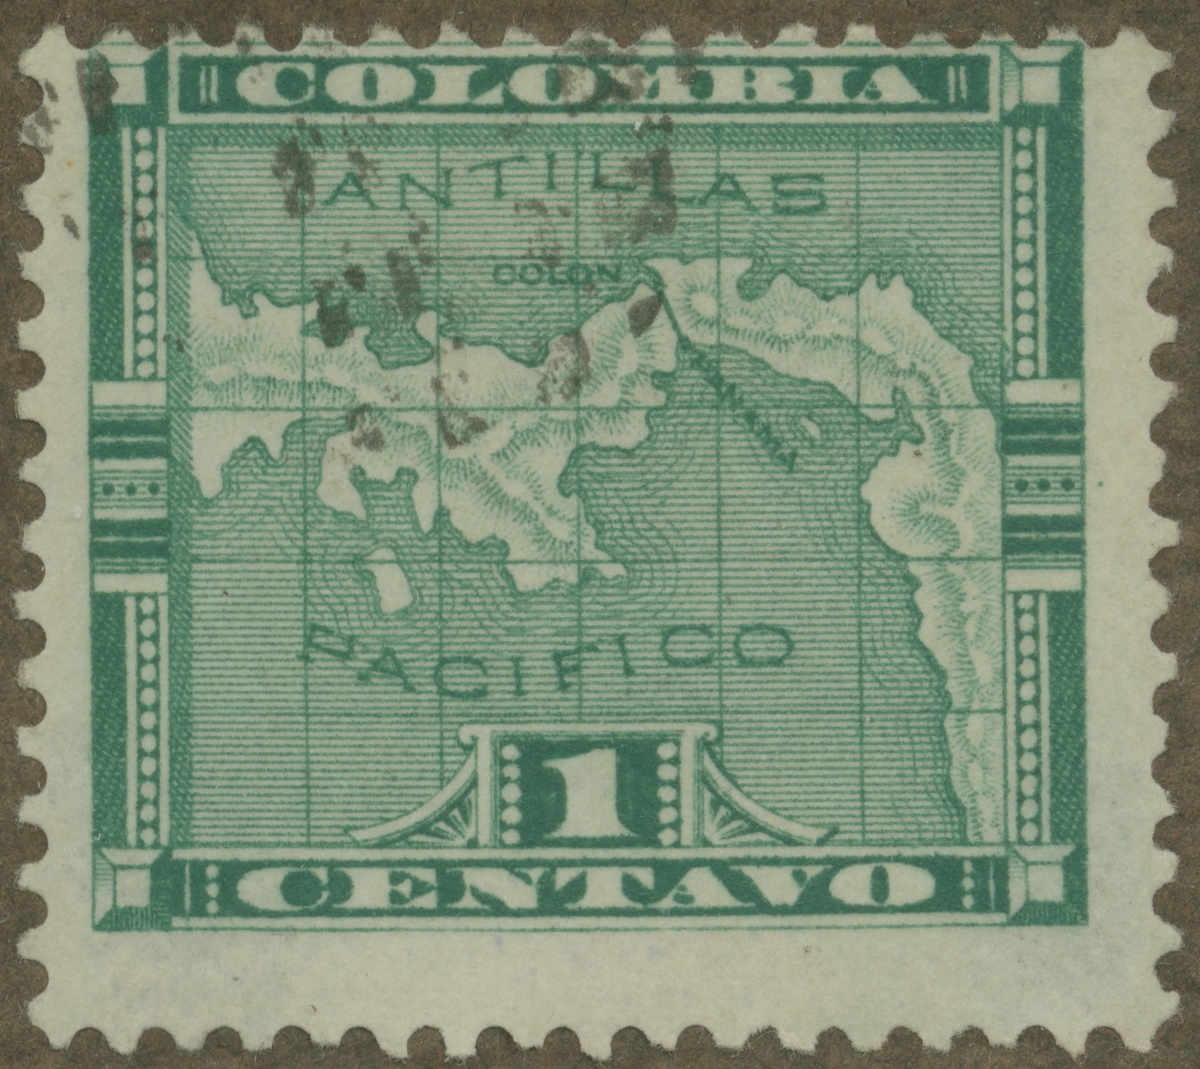 Frimärke ur Gösta Bodmans filatelistiska motivsamling, påbörjad 1950.
Frimärke från Panama, 1892. Motiv av karta över Panama med departementet Colombia.